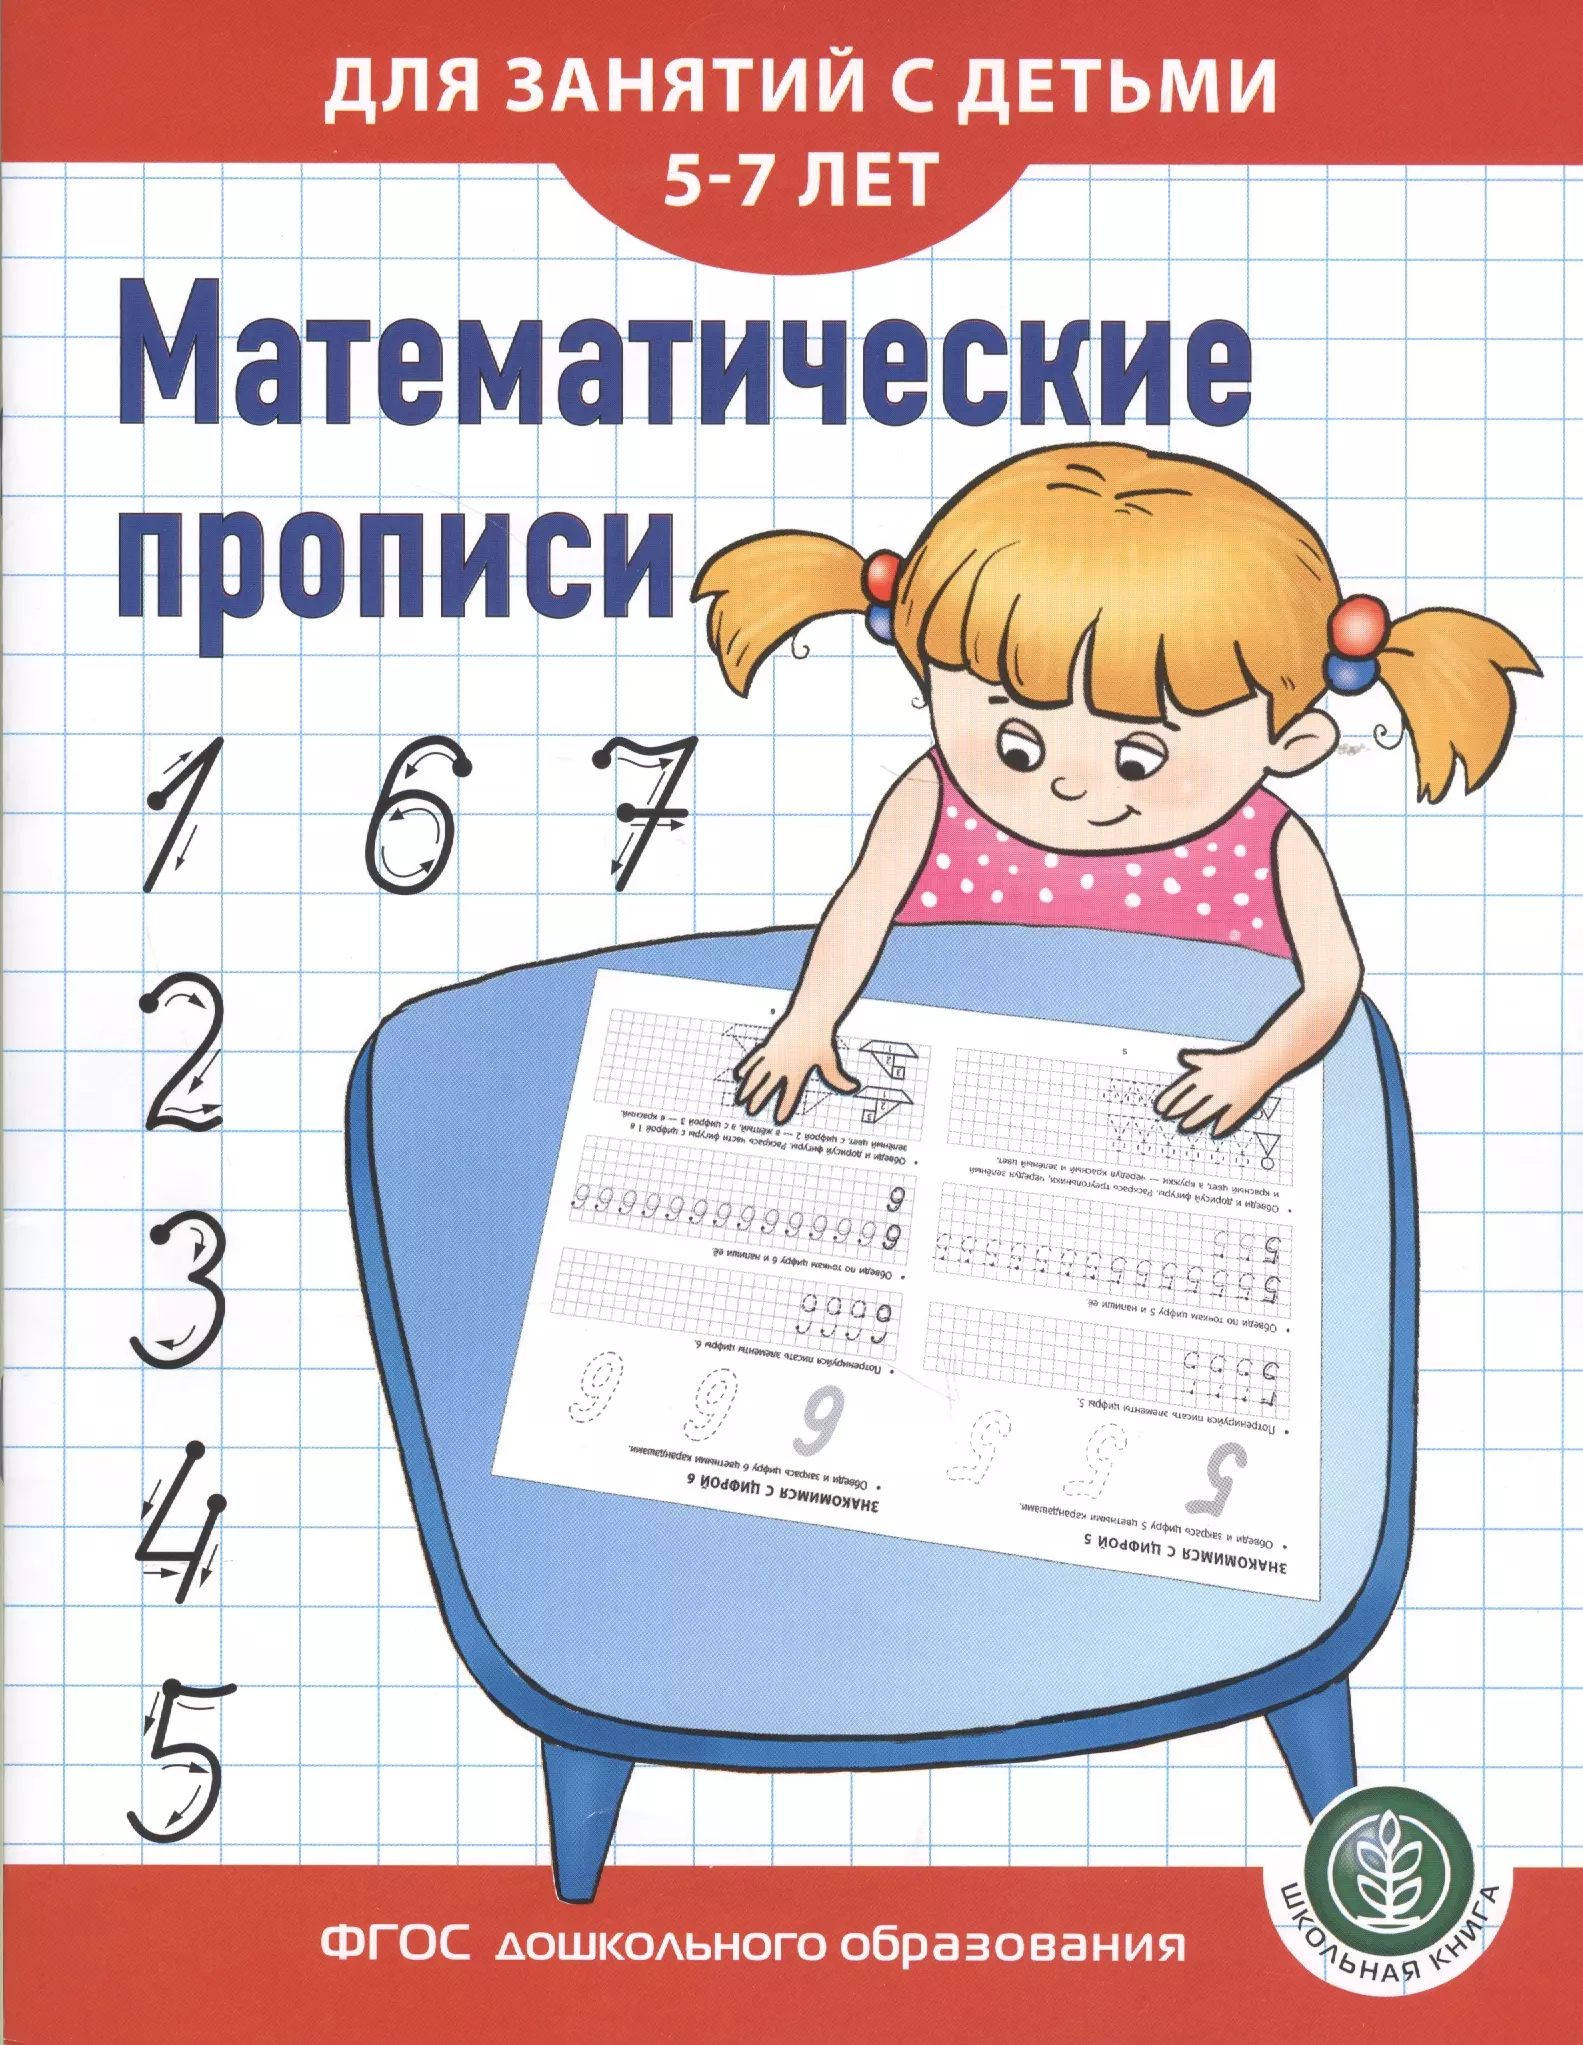 Дурова Ирина Викторовна - Математические прописи для занятий с детьми 5-7 лет